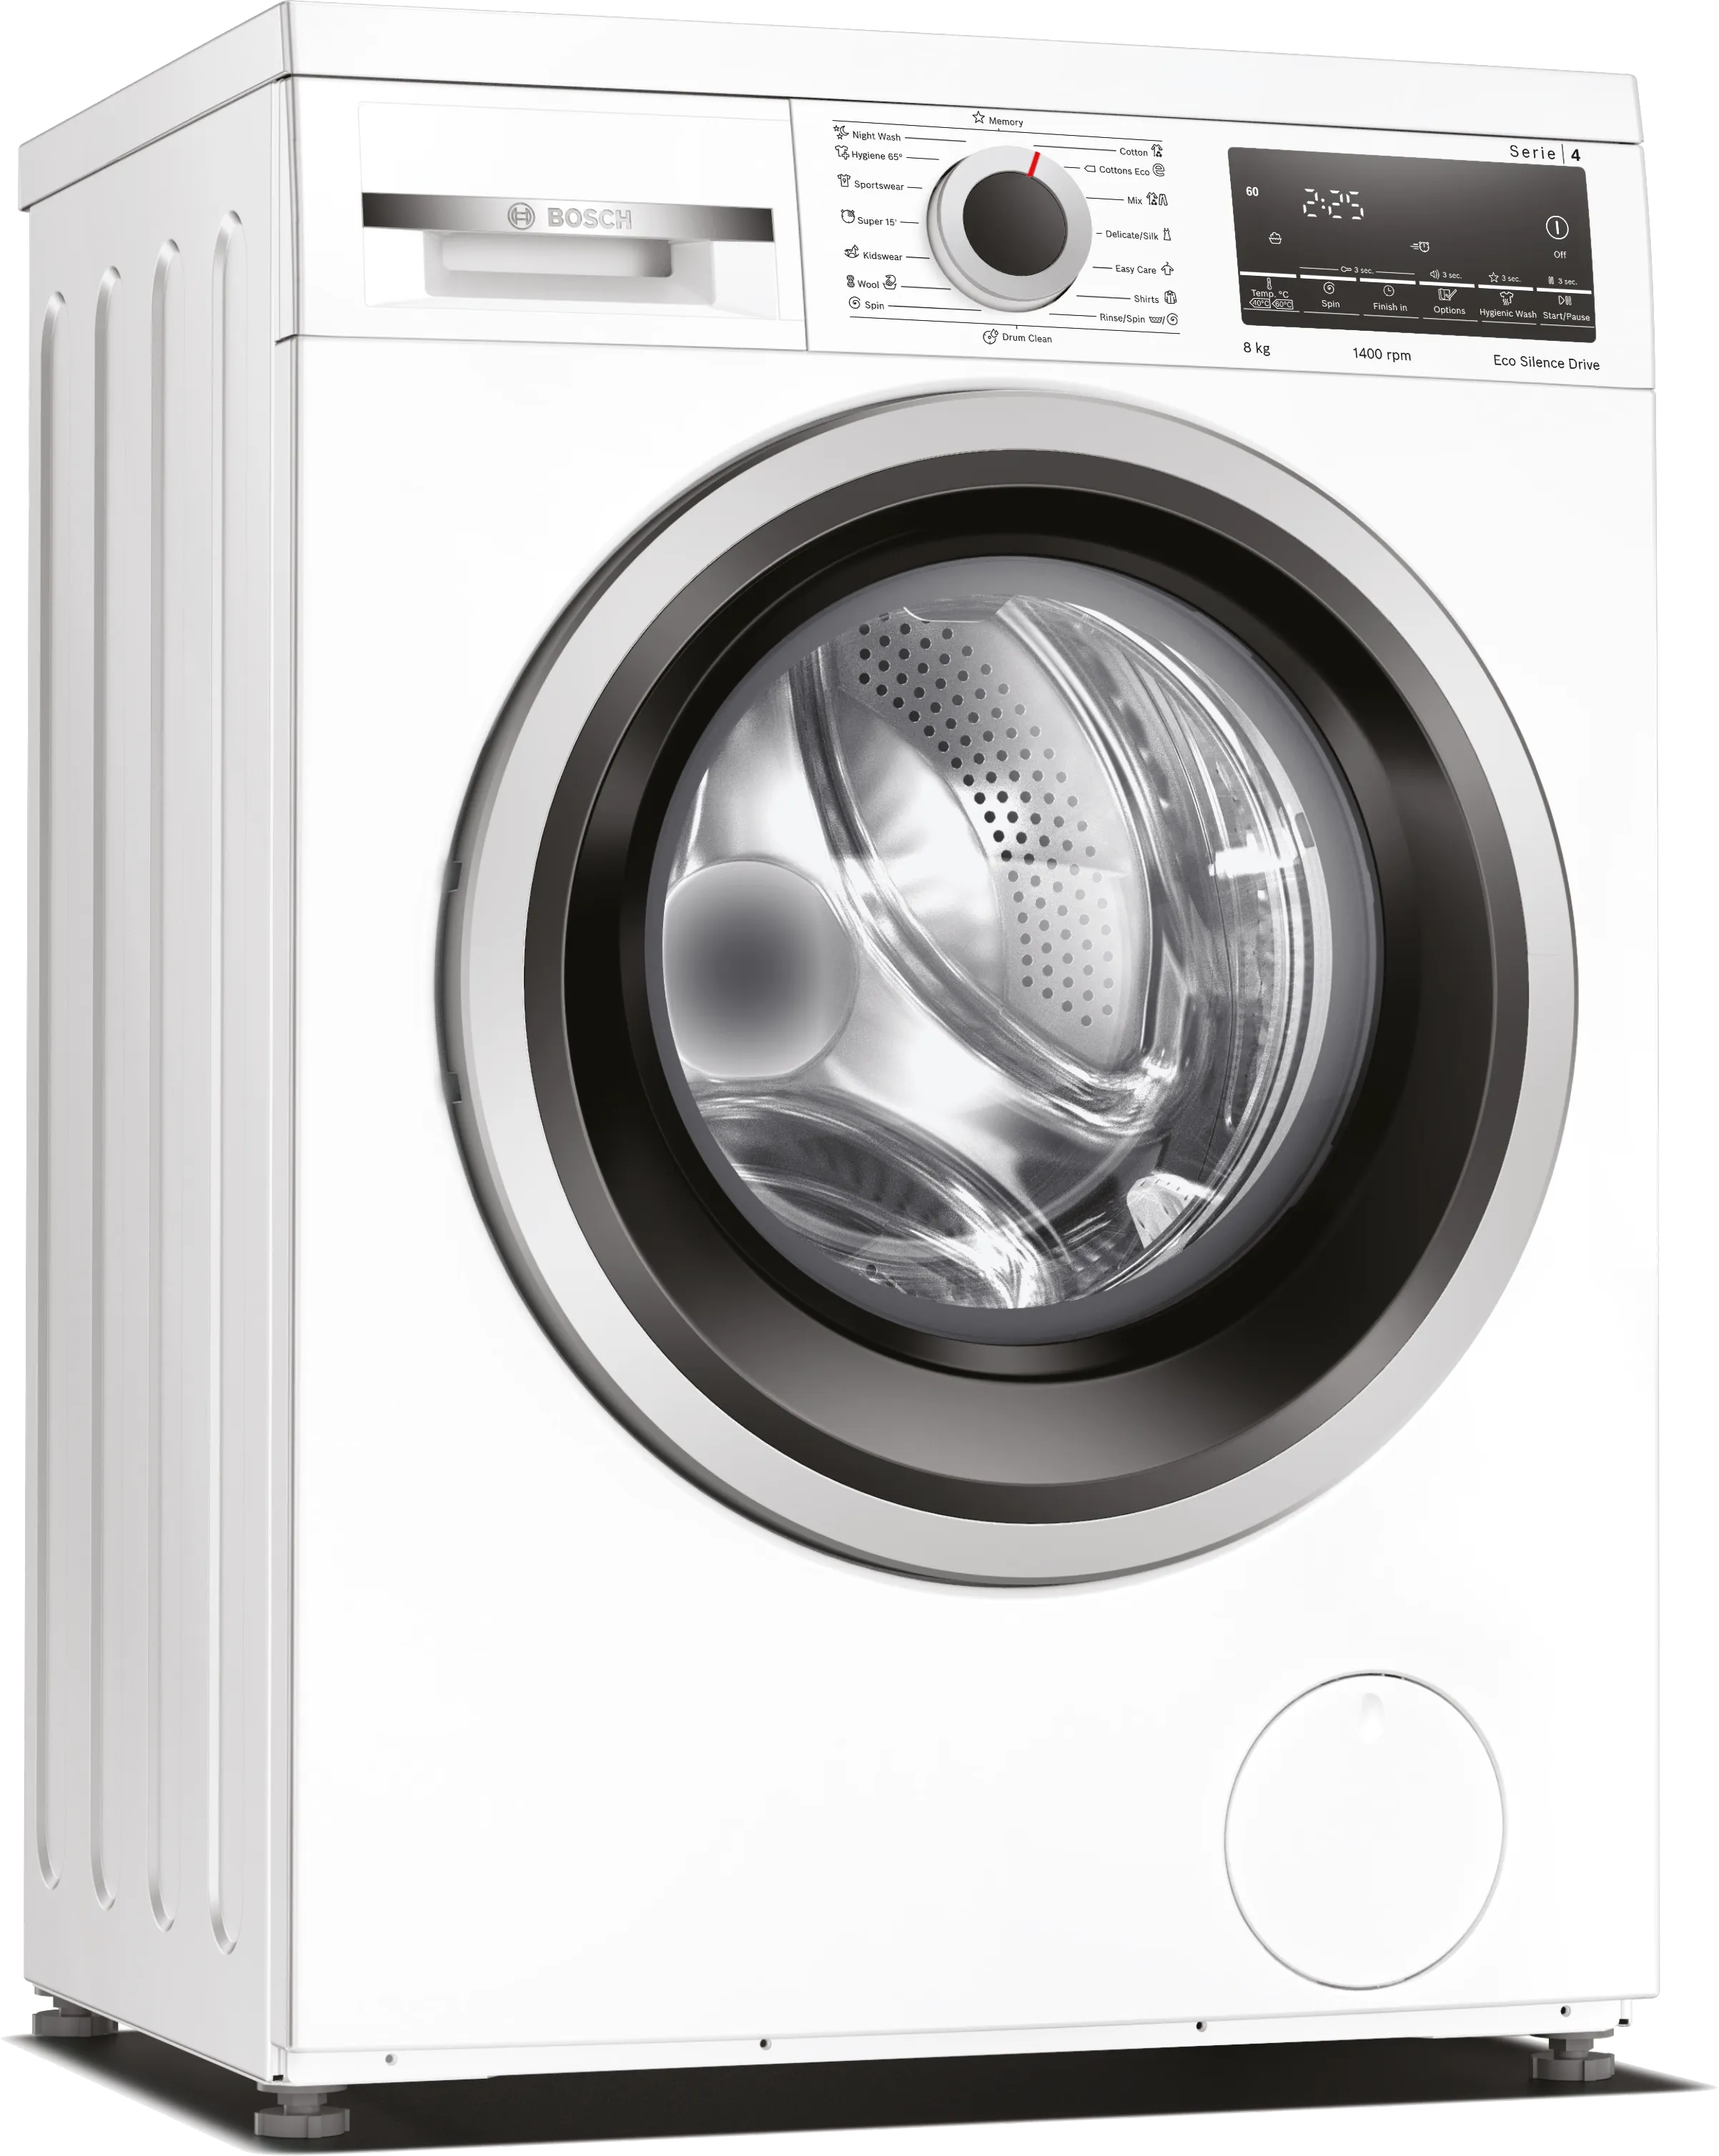 Series 4 washing machine, frontloader 8 kg 1400 rpm 